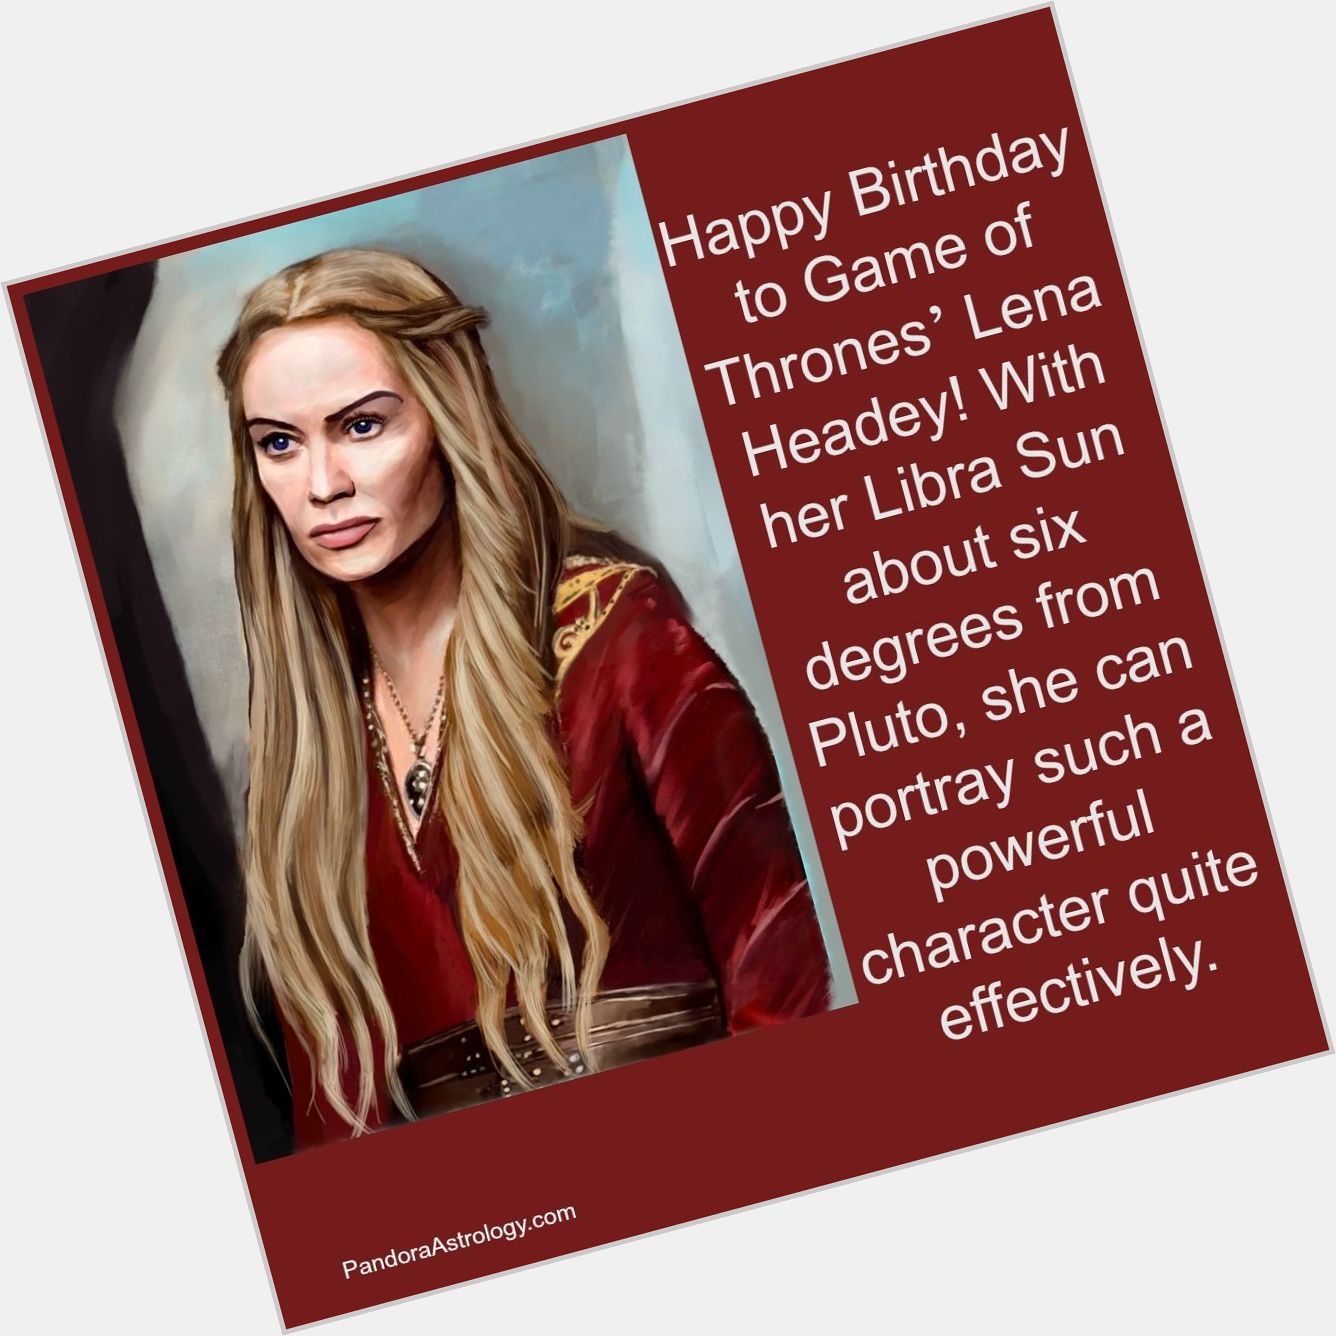 Happy Birthday to Game of Thrones Lena Headey!   